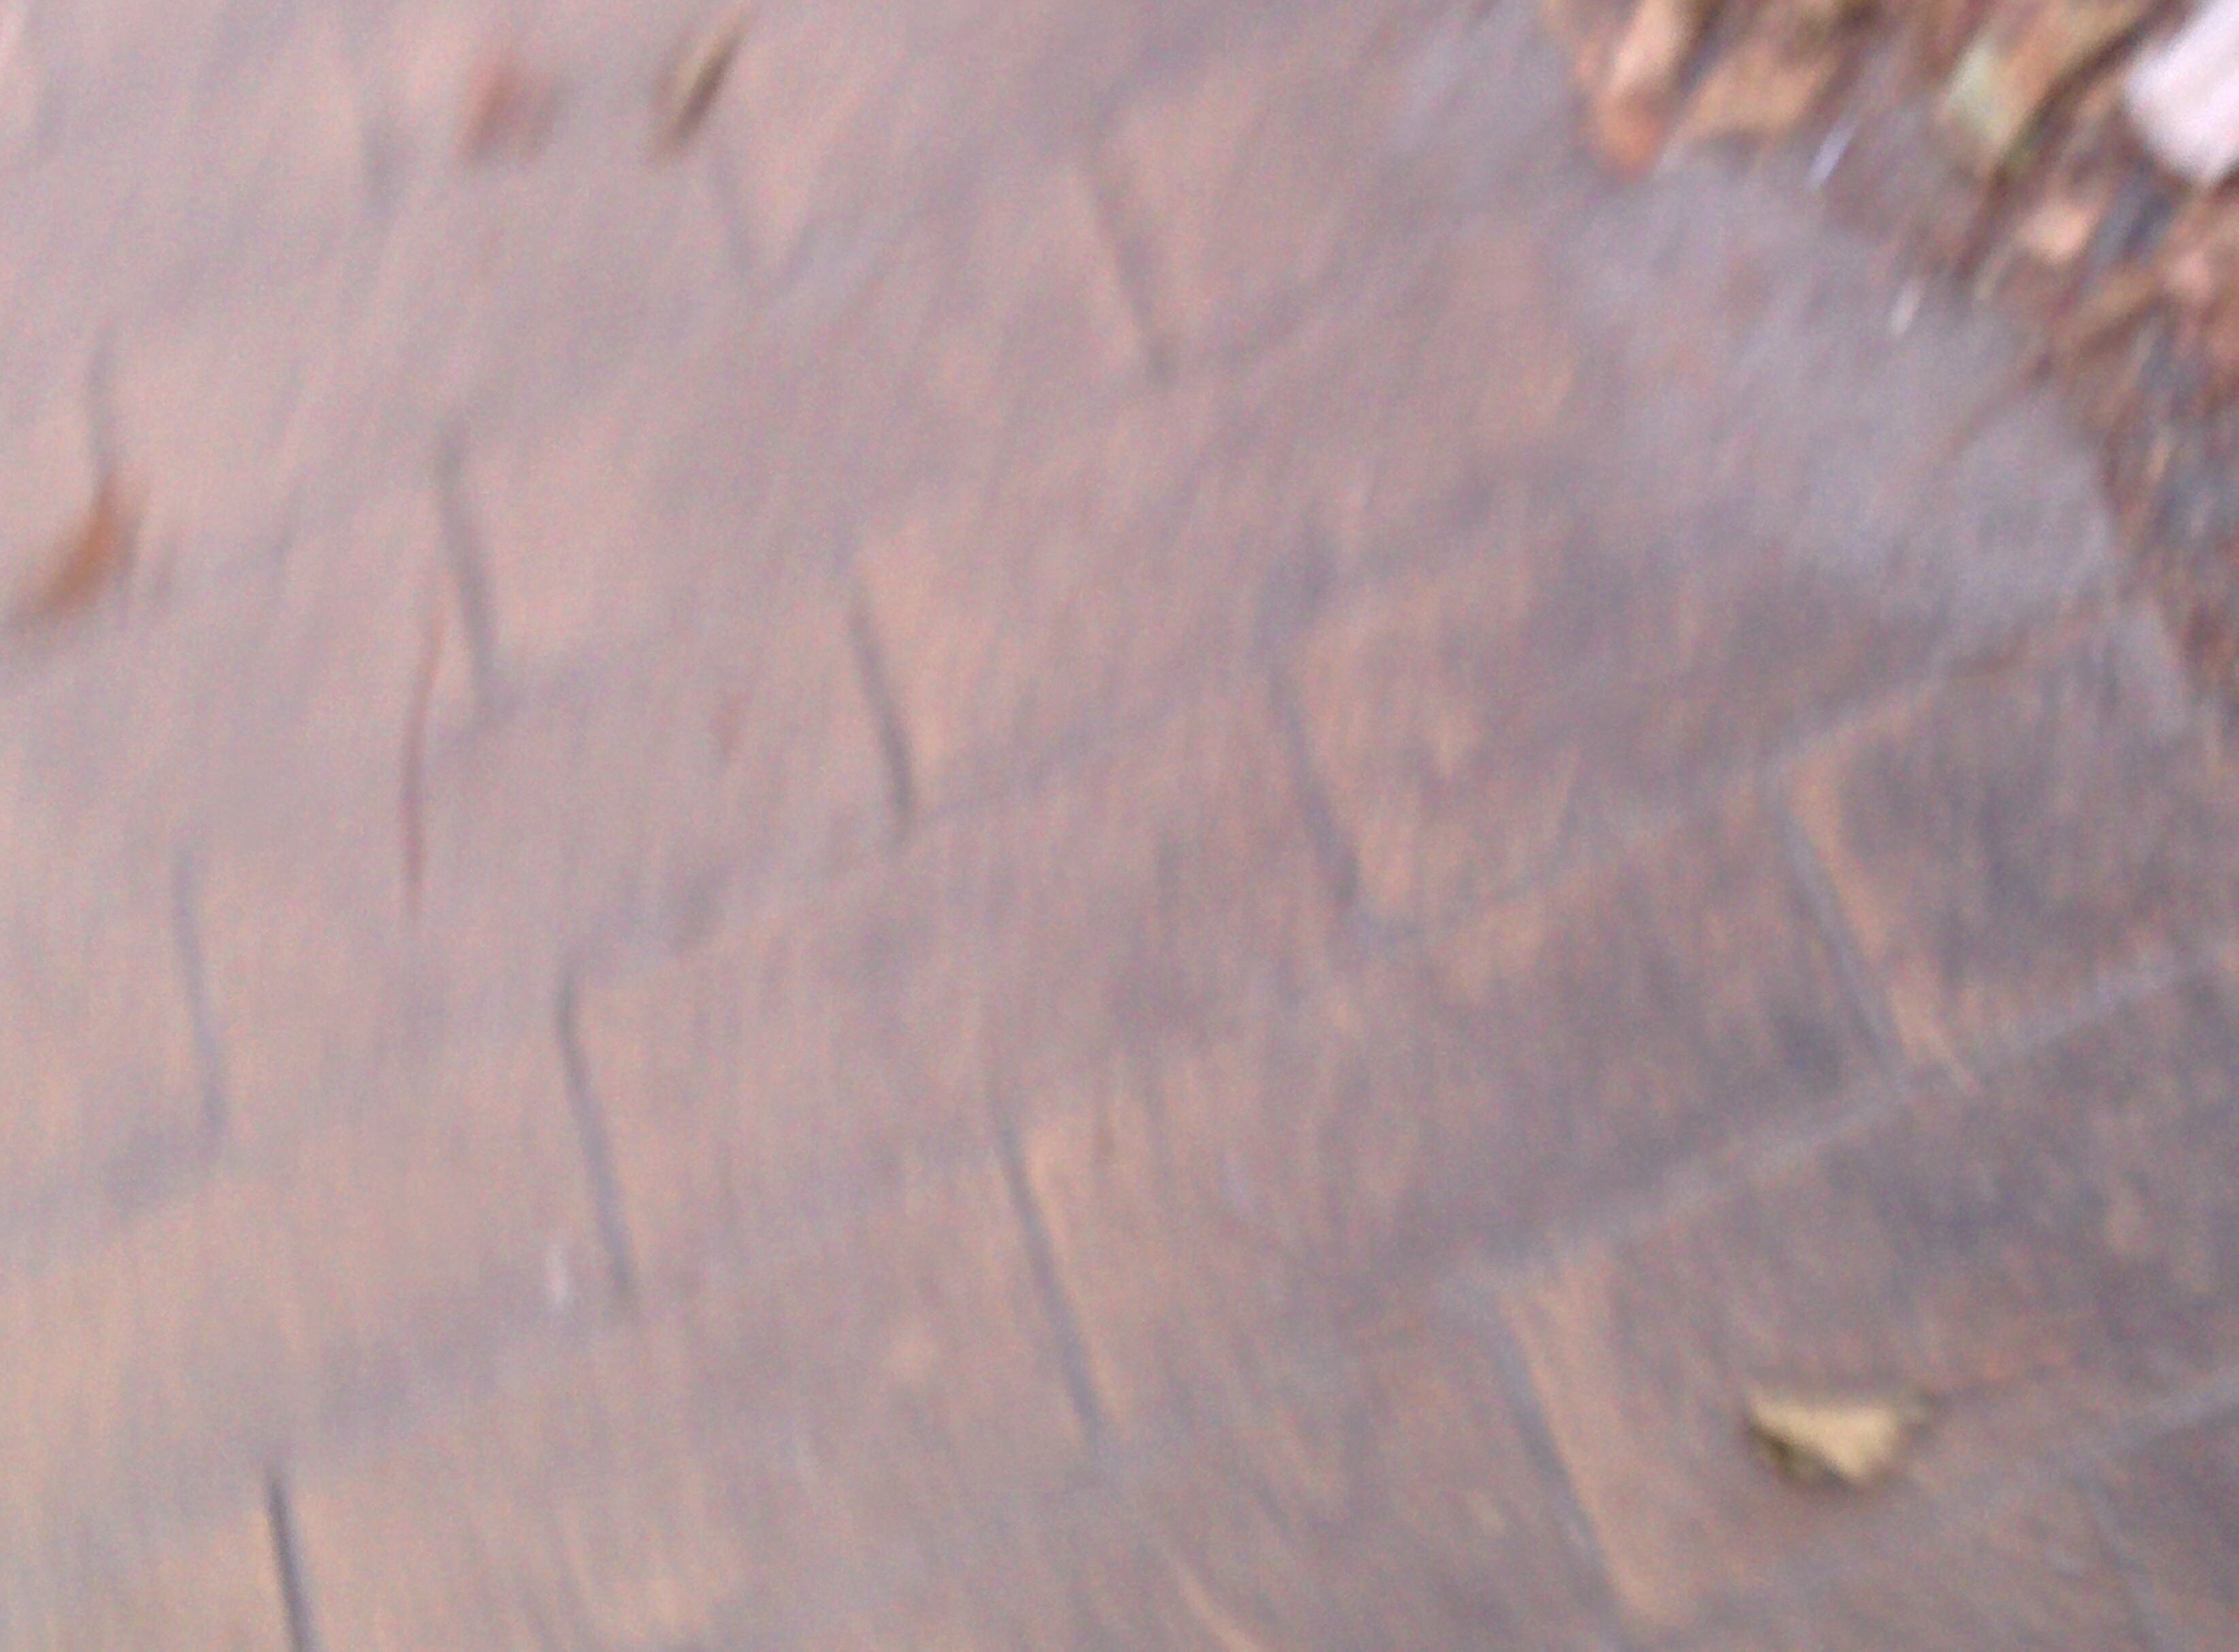 blurry pavement